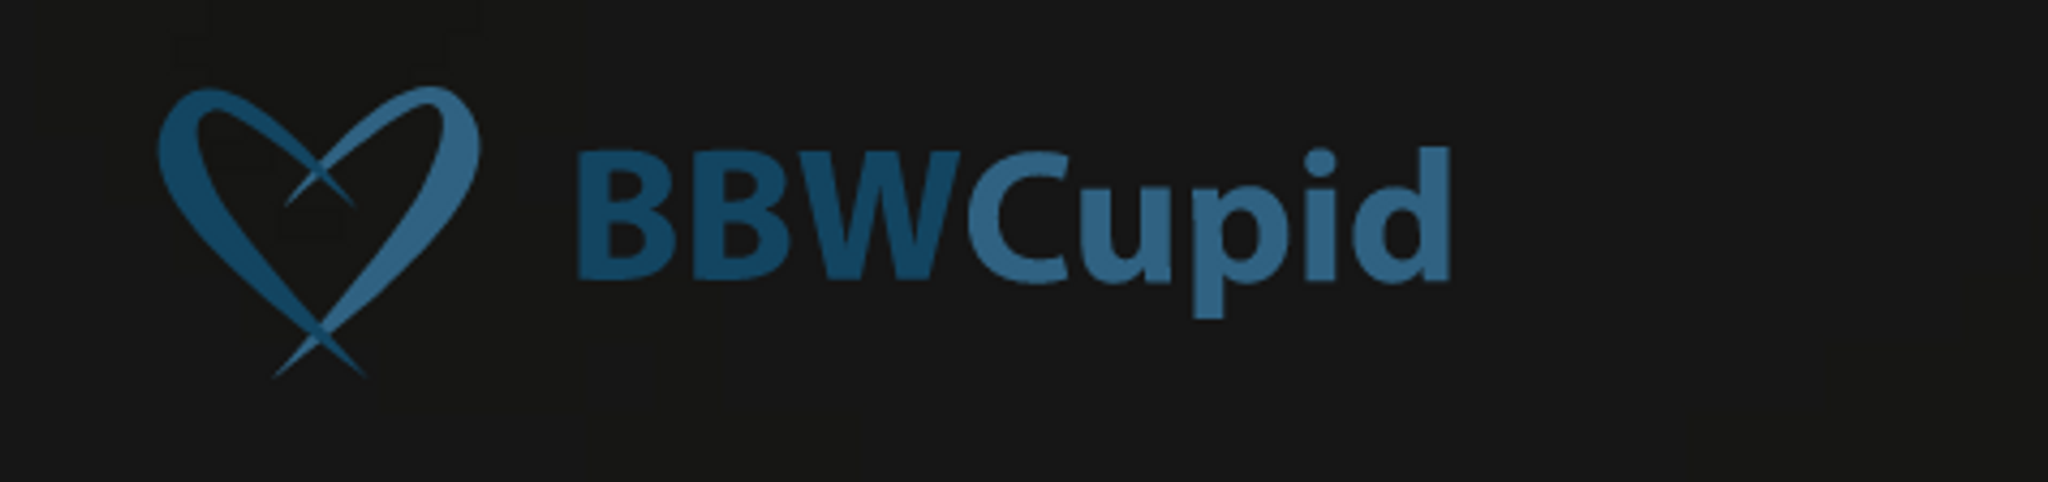 BBWCupid logo